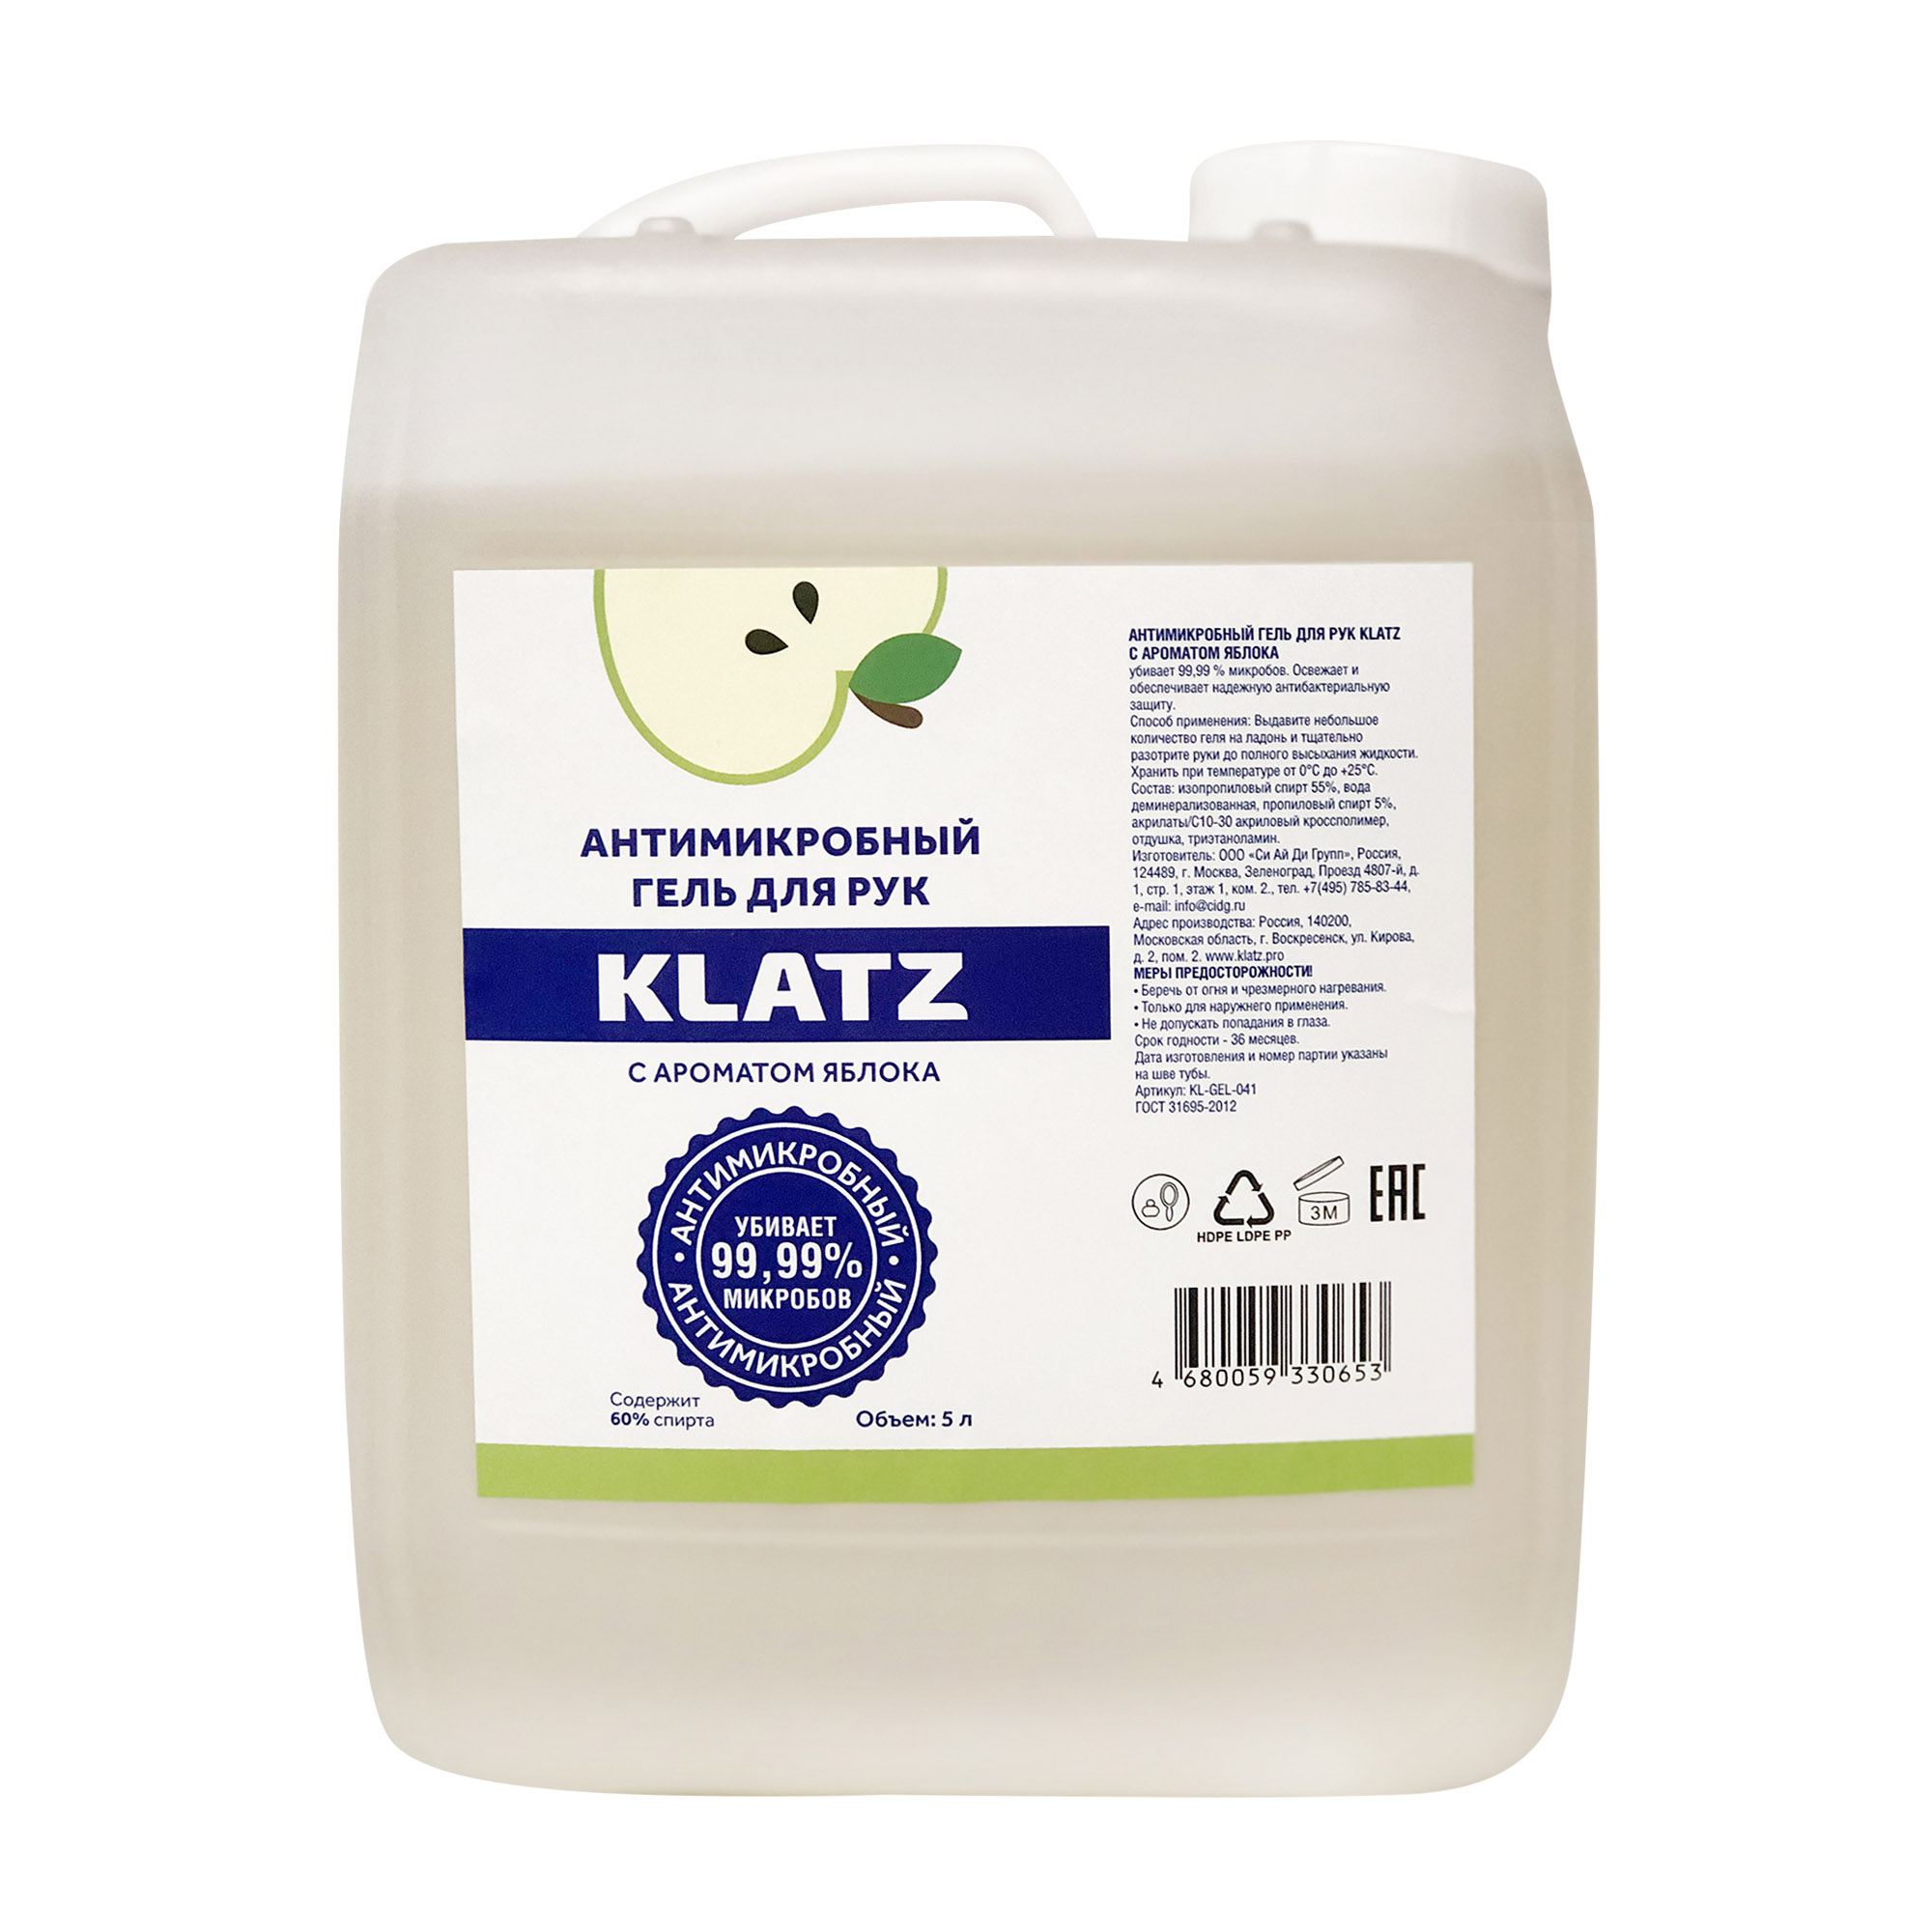 Klatz Антимикробный гель для рук с ароматом яблока, 5 л (Kla